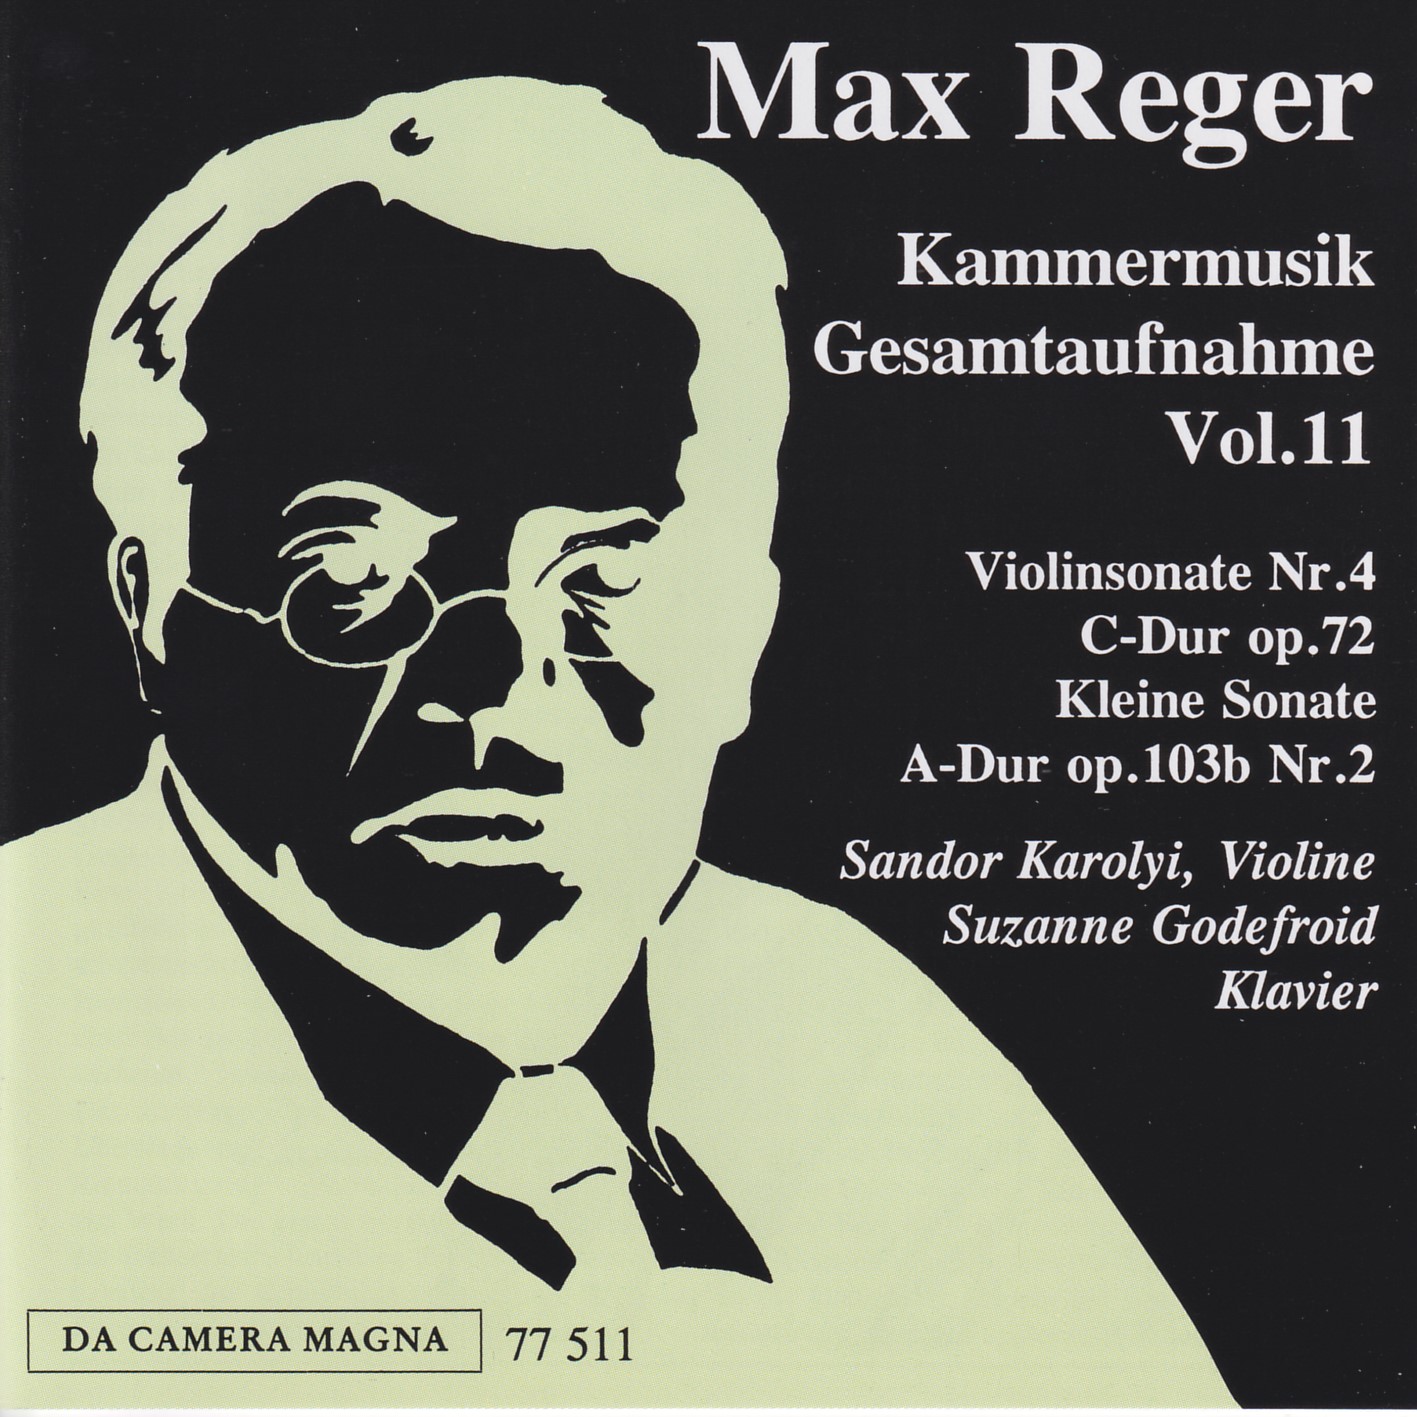 Max Reger - Kammermusik komplett Vol. 11